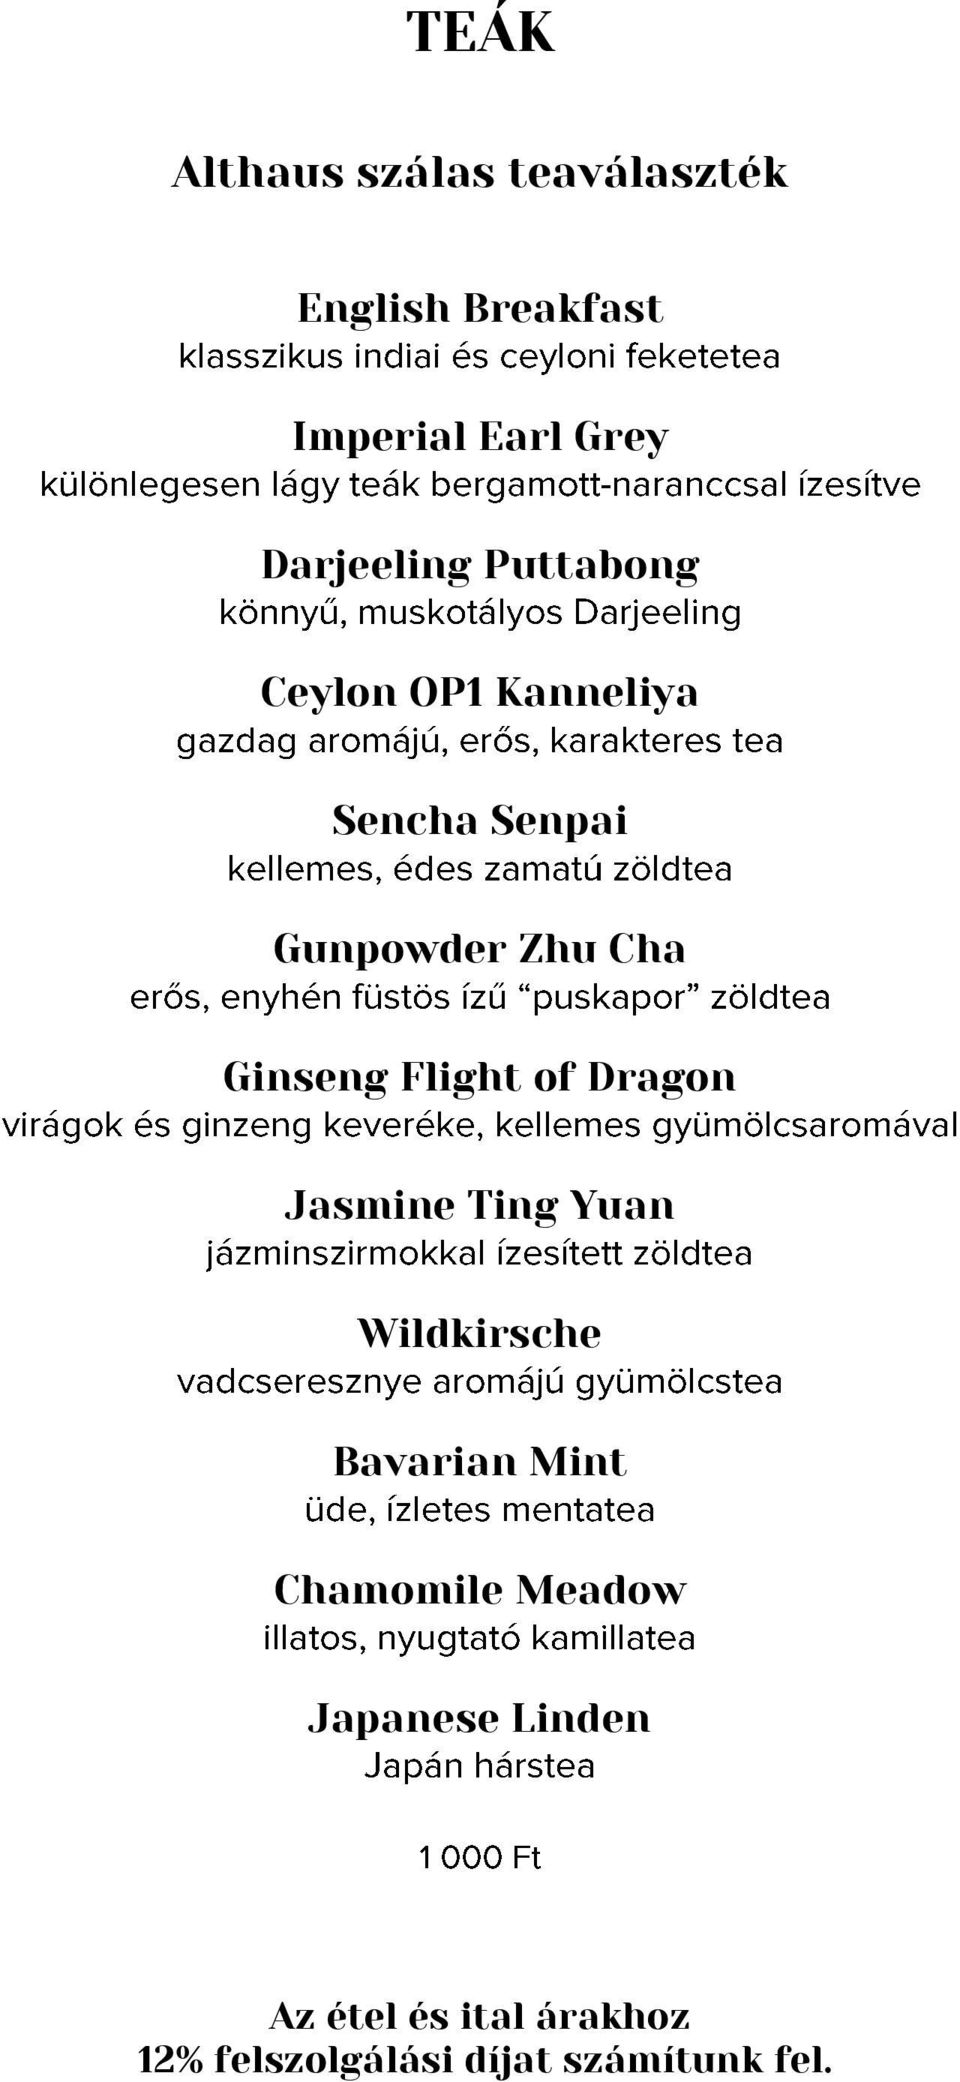 Ginseng Flight of Dragon Jasmine Ting Yuan Wildkirsche Bavarian Mint